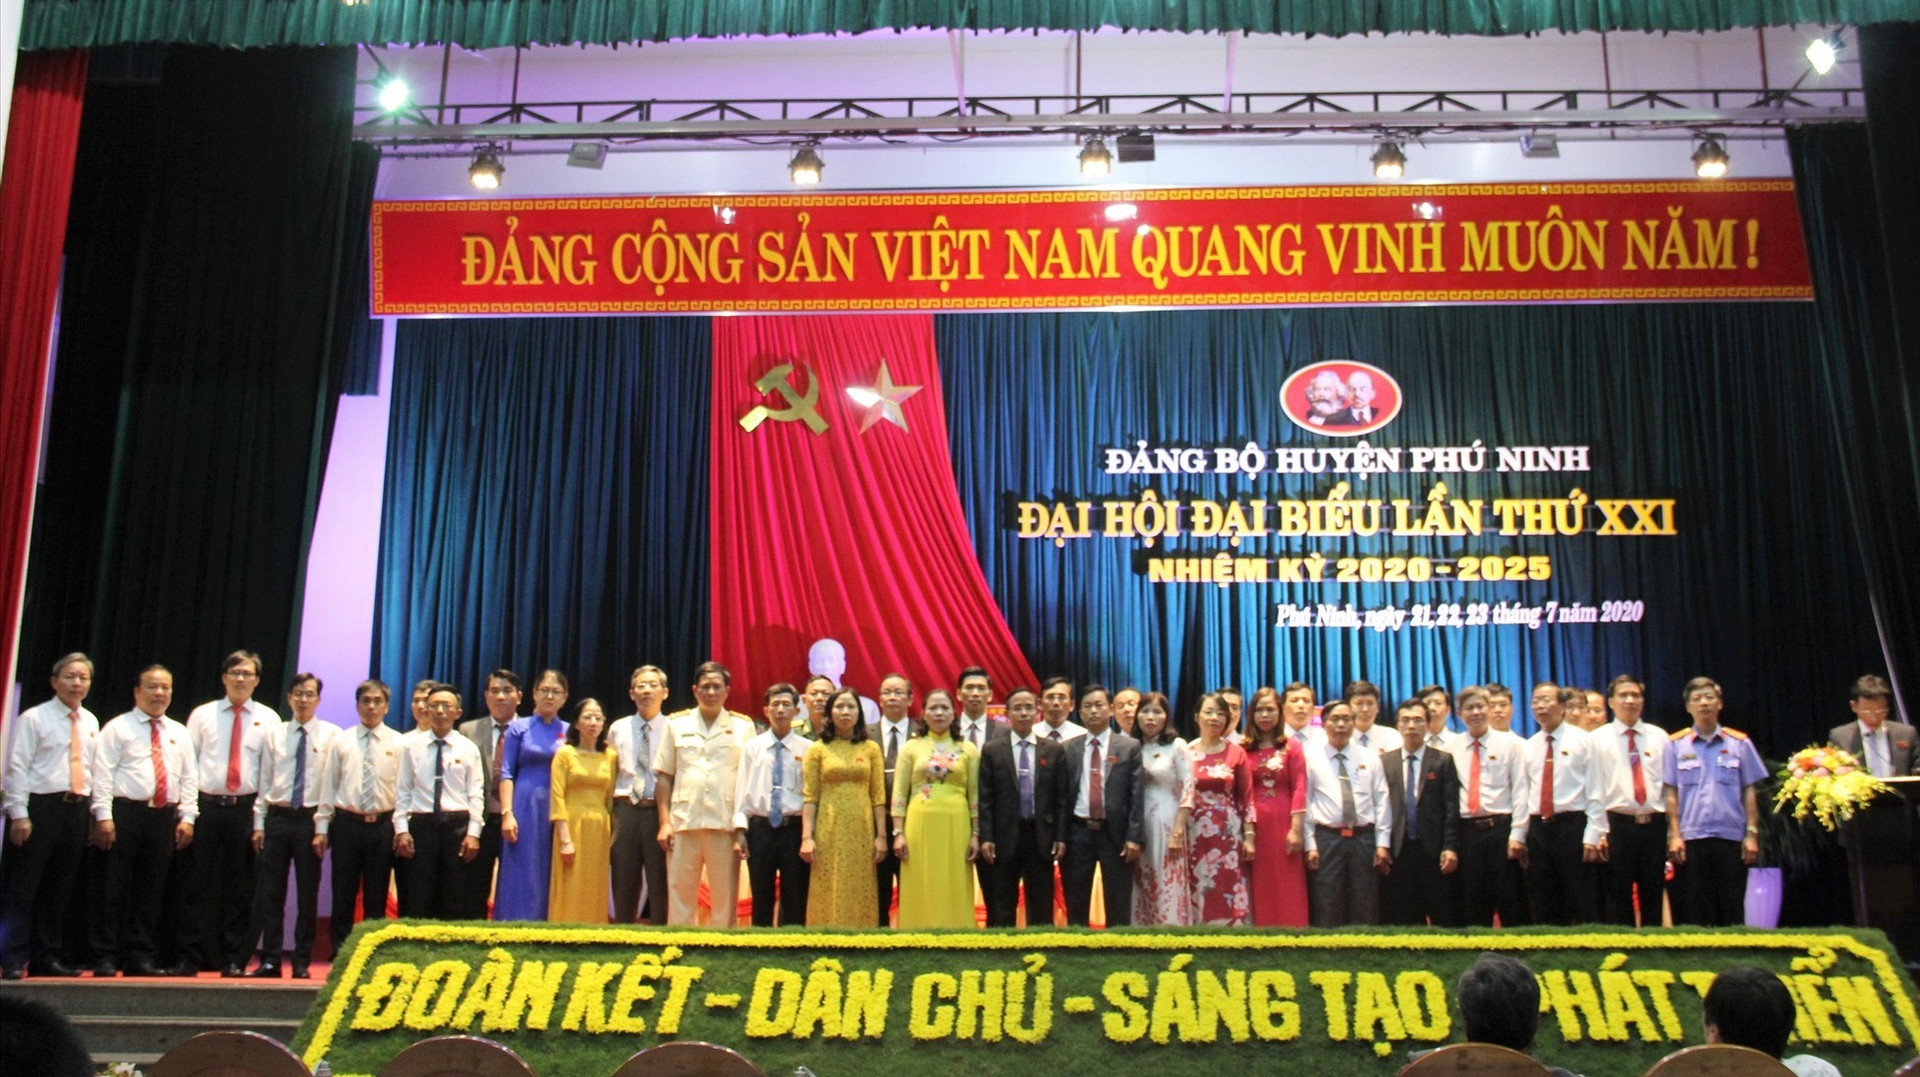 39 đồng chí được bầu vào Ban Chấp hành Đảng bộ huyện Phú Ninh khóa XXI (Nhiệm kỳ 2020 - 2025). Ảnh: VINH ANH